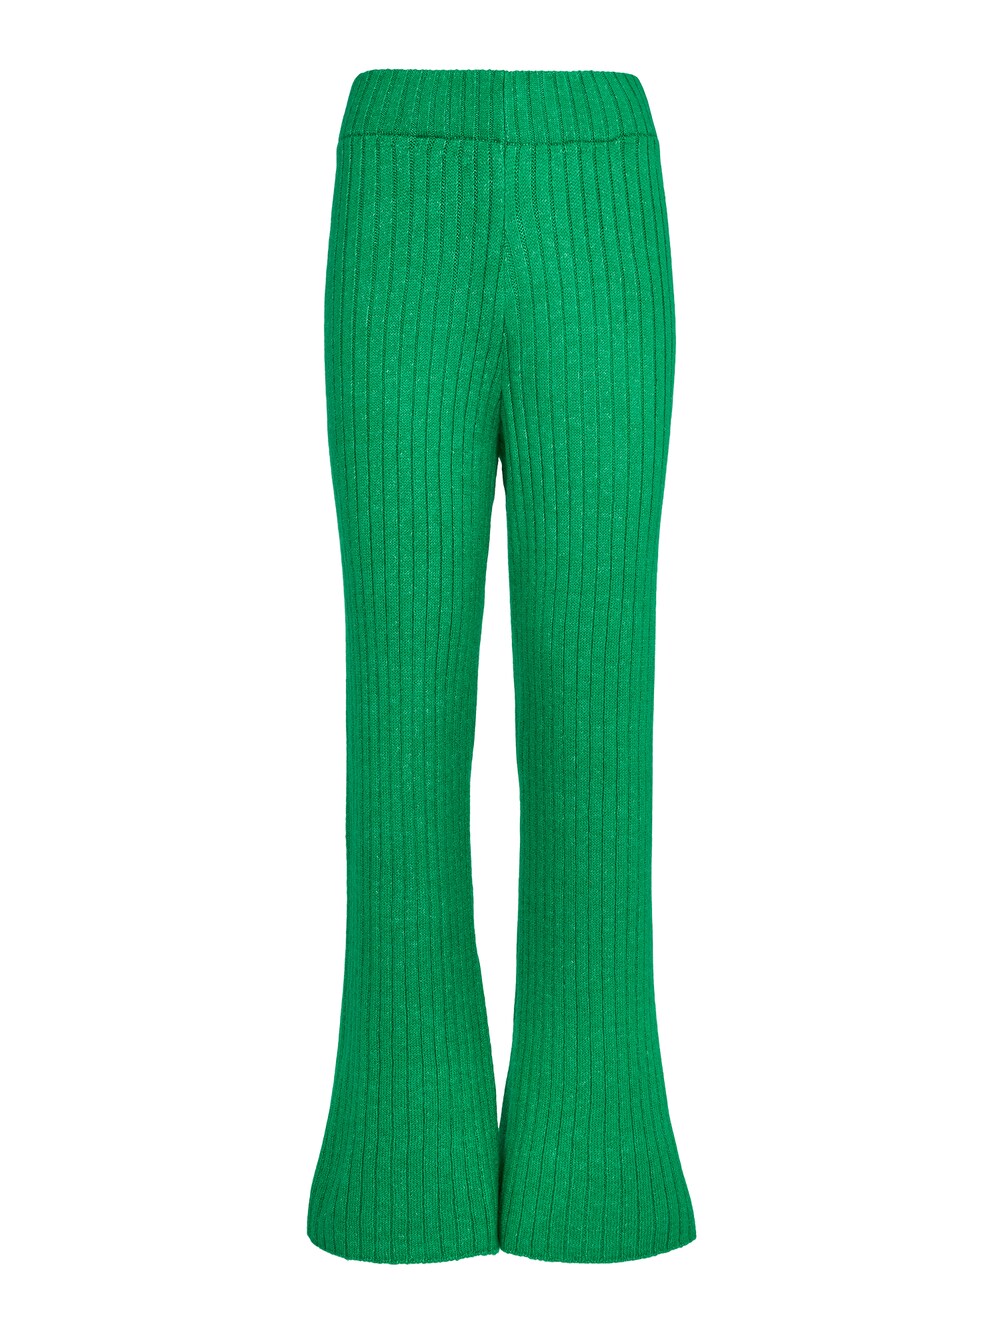 Расклешенные брюки About You COMFY, зеленый